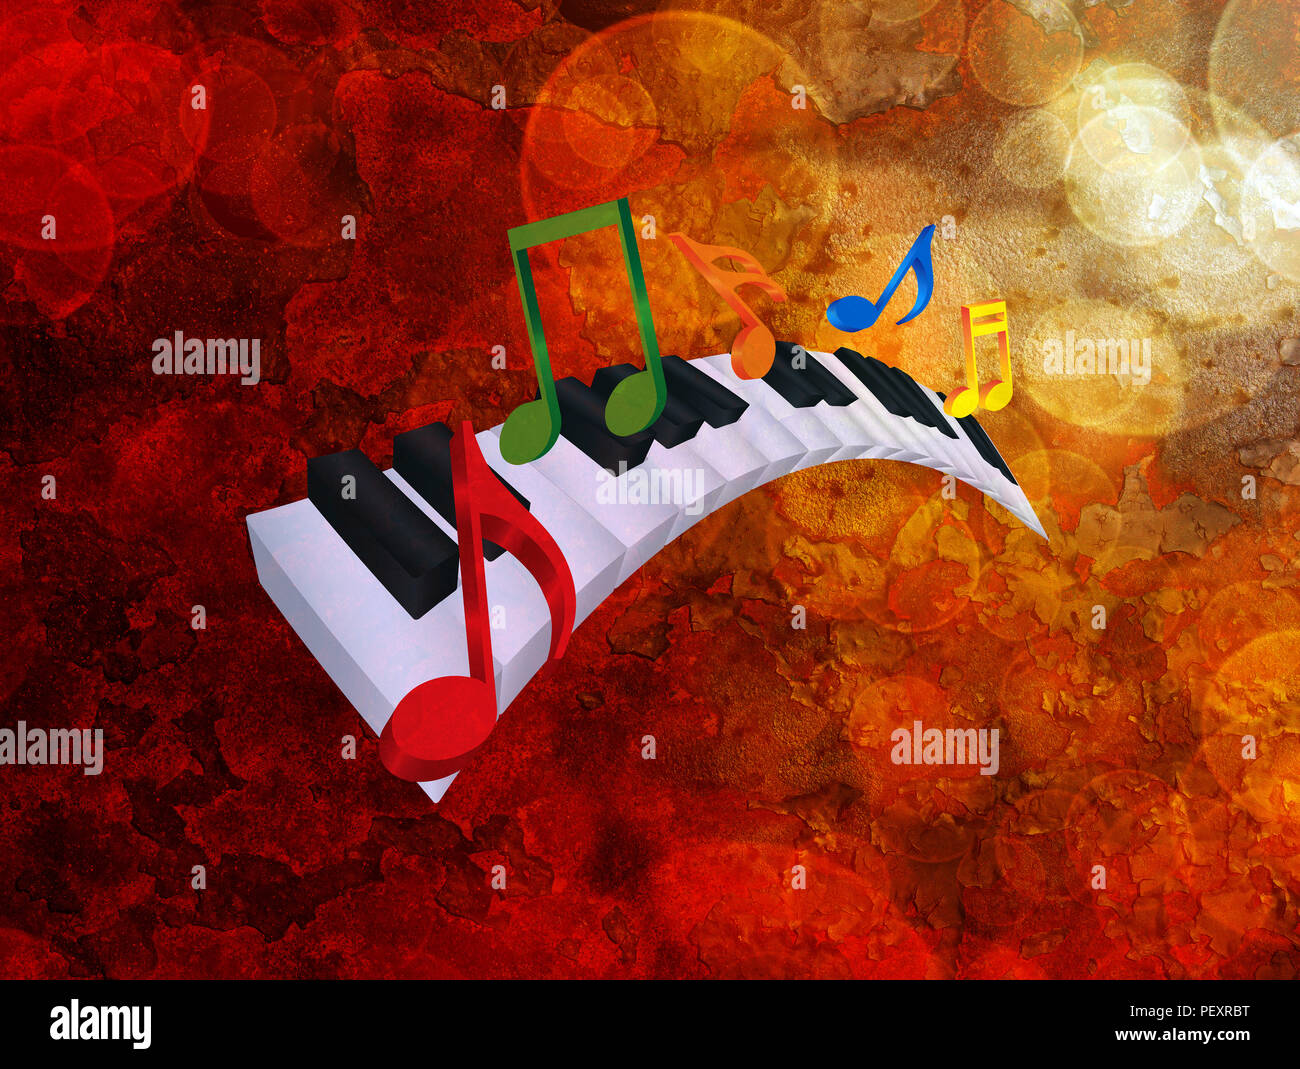 Piano teclado con teclas onduladas de color blanco y negro y colorida música notas en 3D ilustración de fondo de textura Grunge Foto de stock